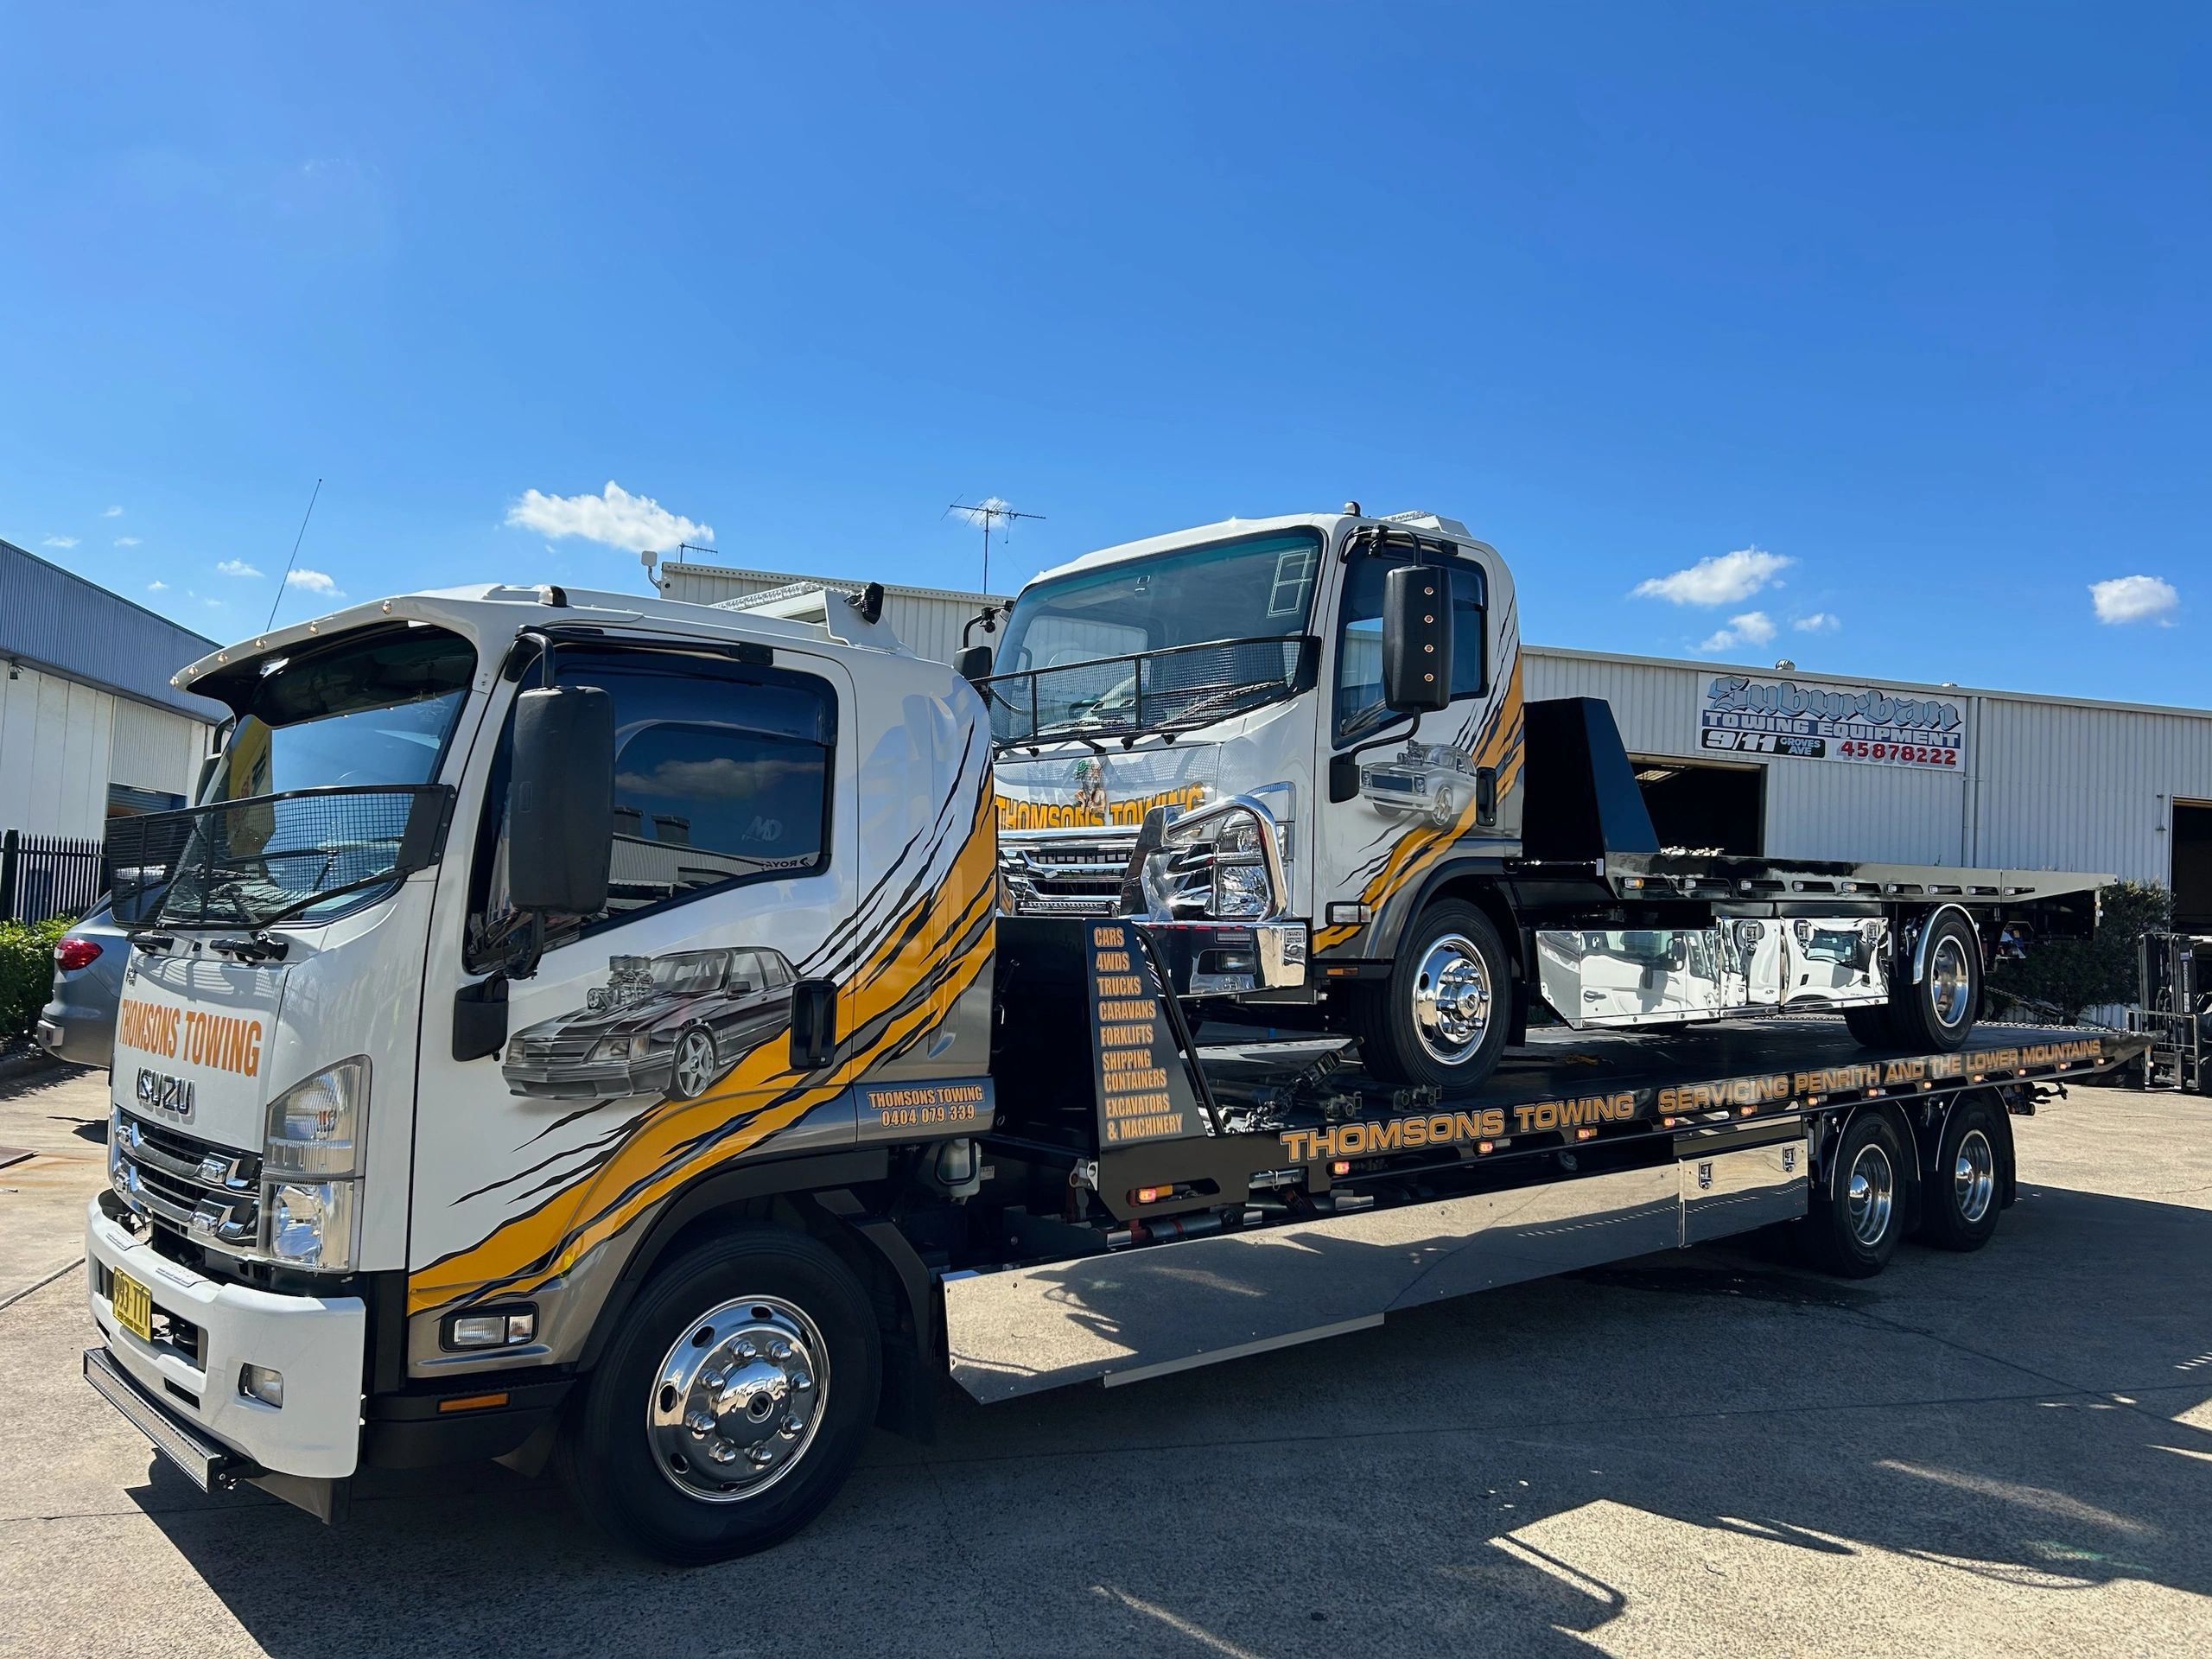 Tow Truck Cranebrook | Vehicle Towing Cranebrook | Towing Company Cranebrook